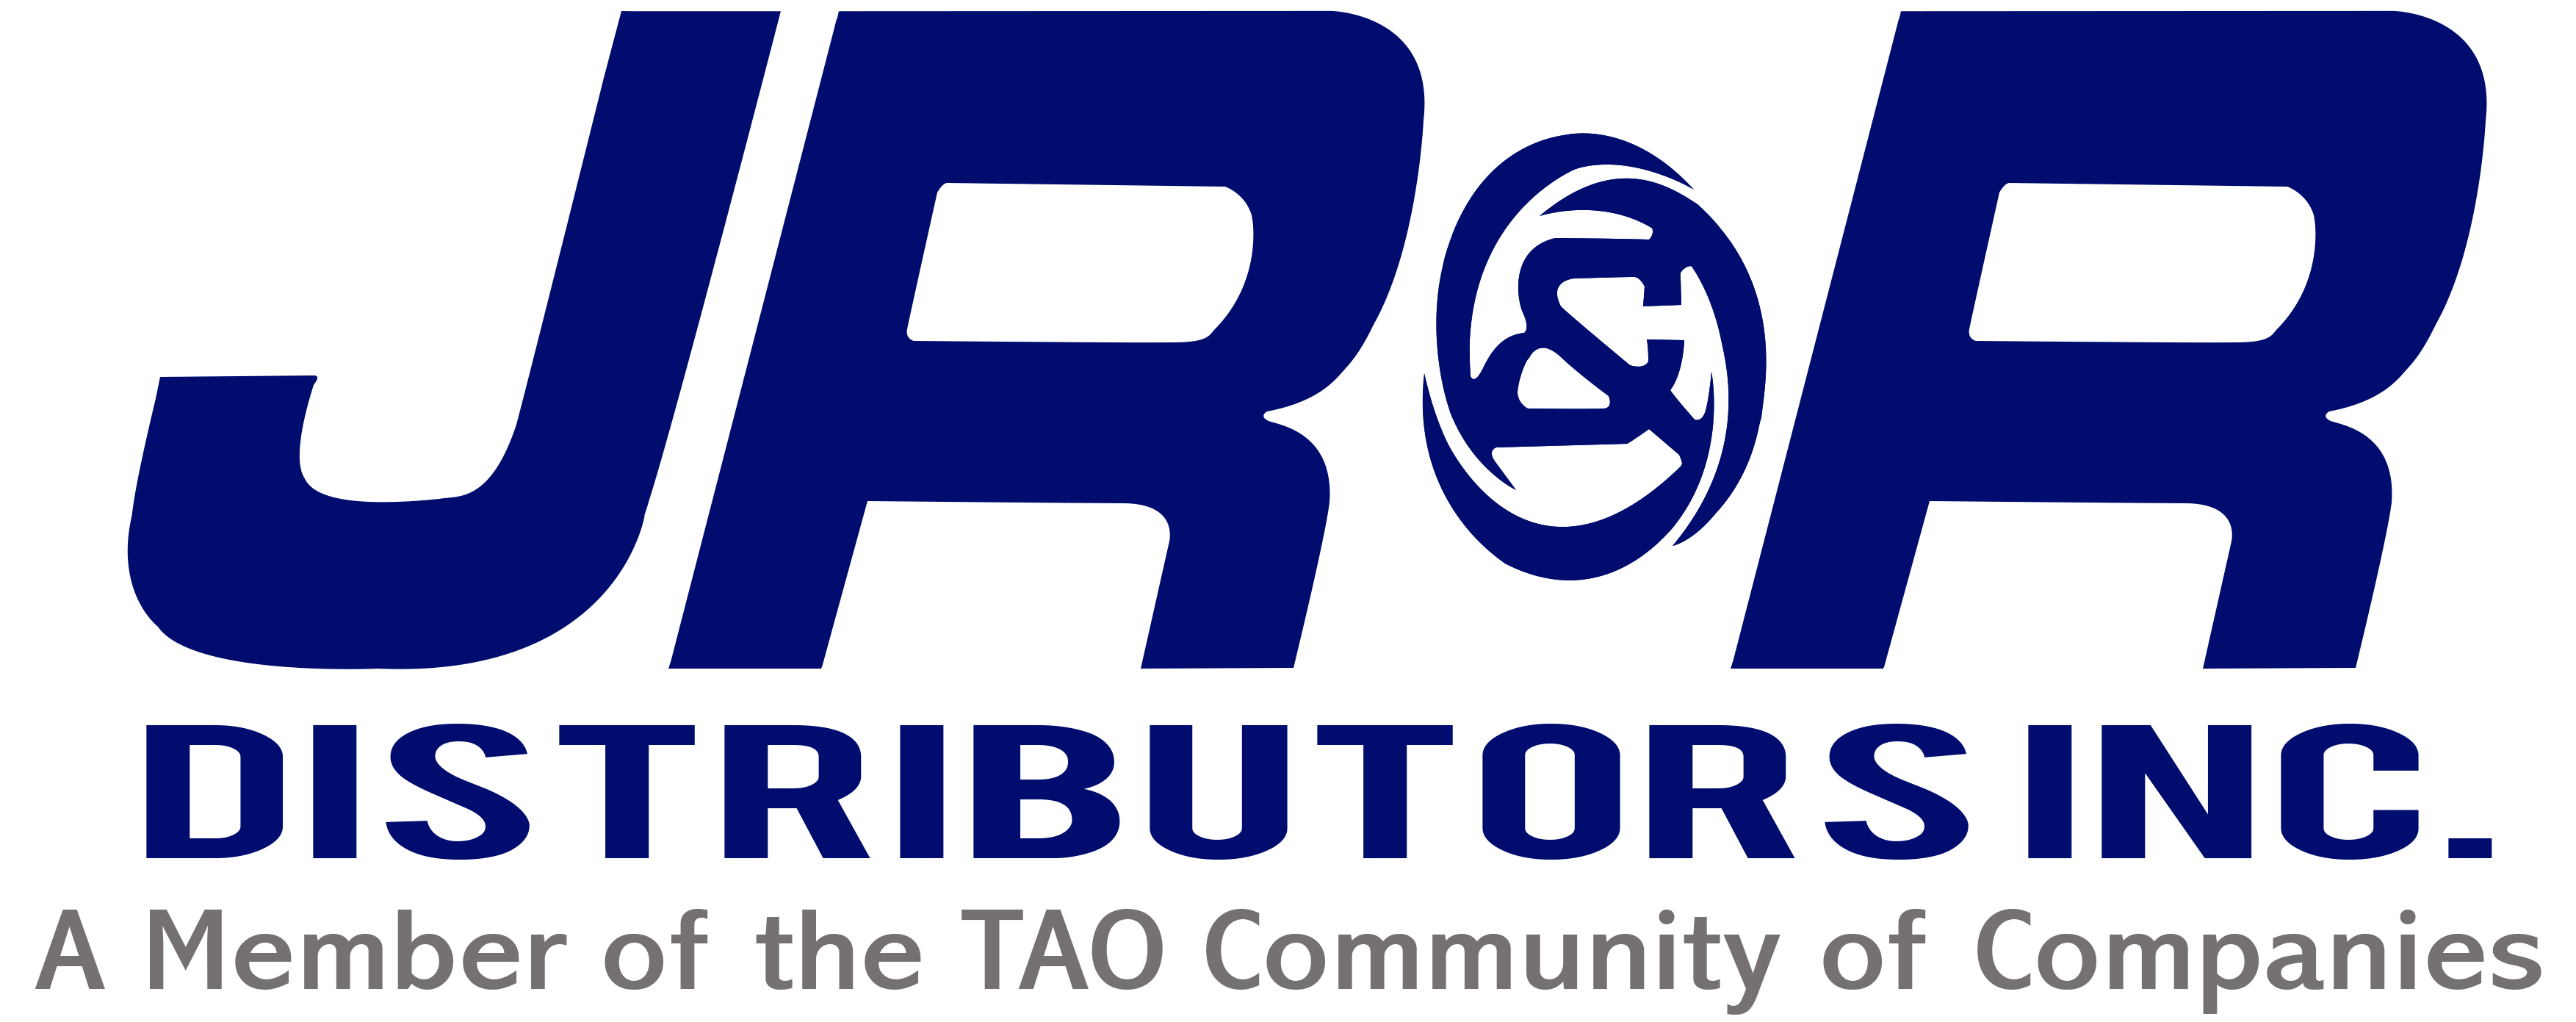 JR&R Distributors Inc.